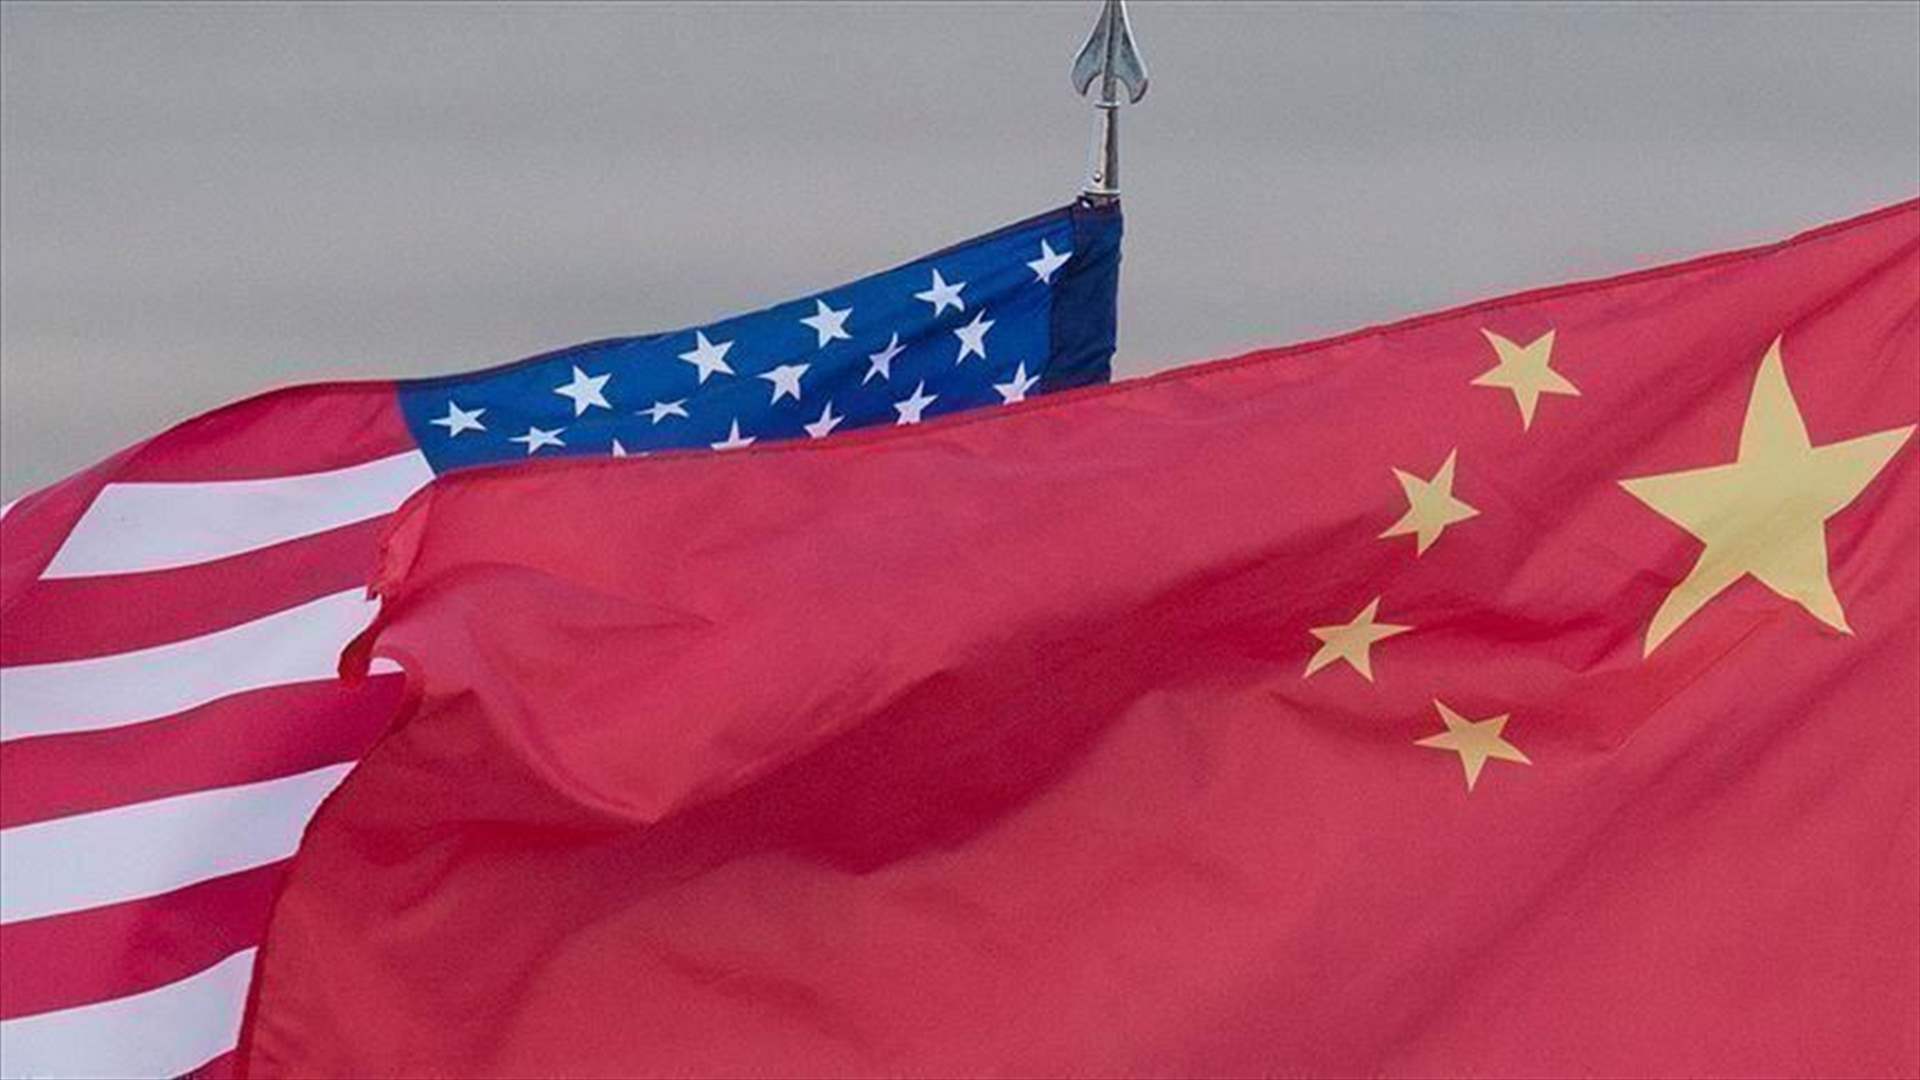 بكين وواشنطن تتفقان على تشكيل مجموعة عمل للمسائل التجارية